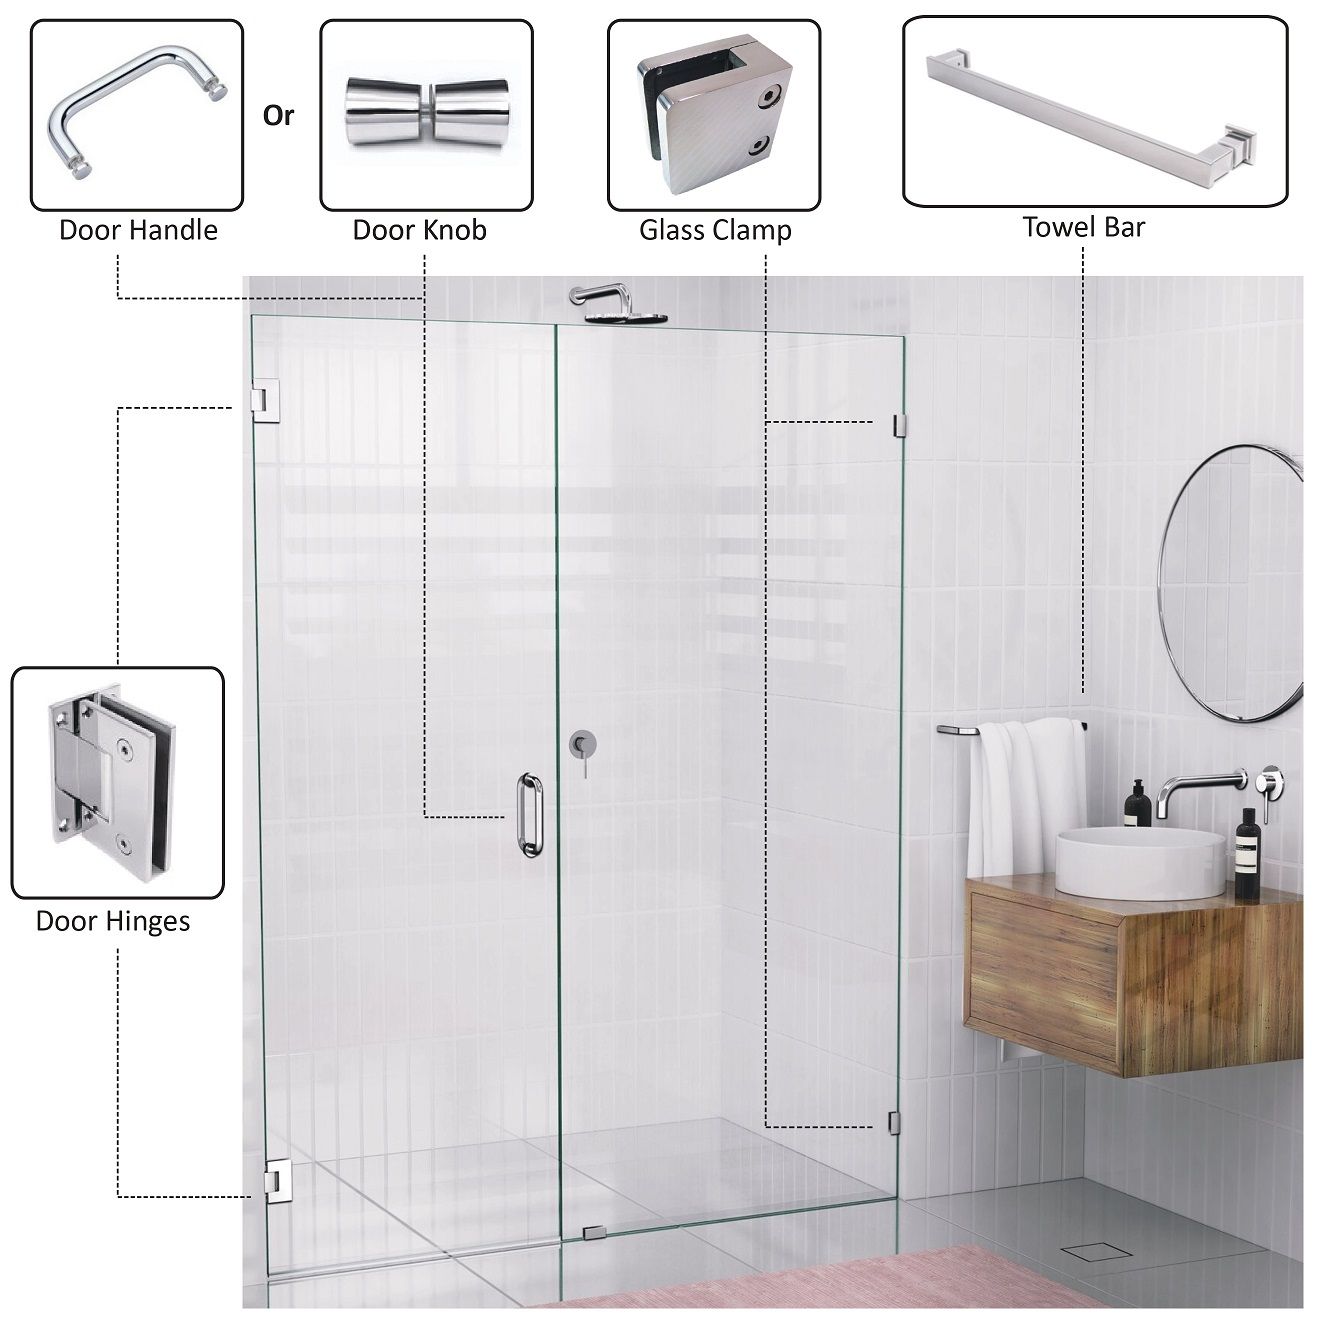 Glass Shower Door - Glass shower door